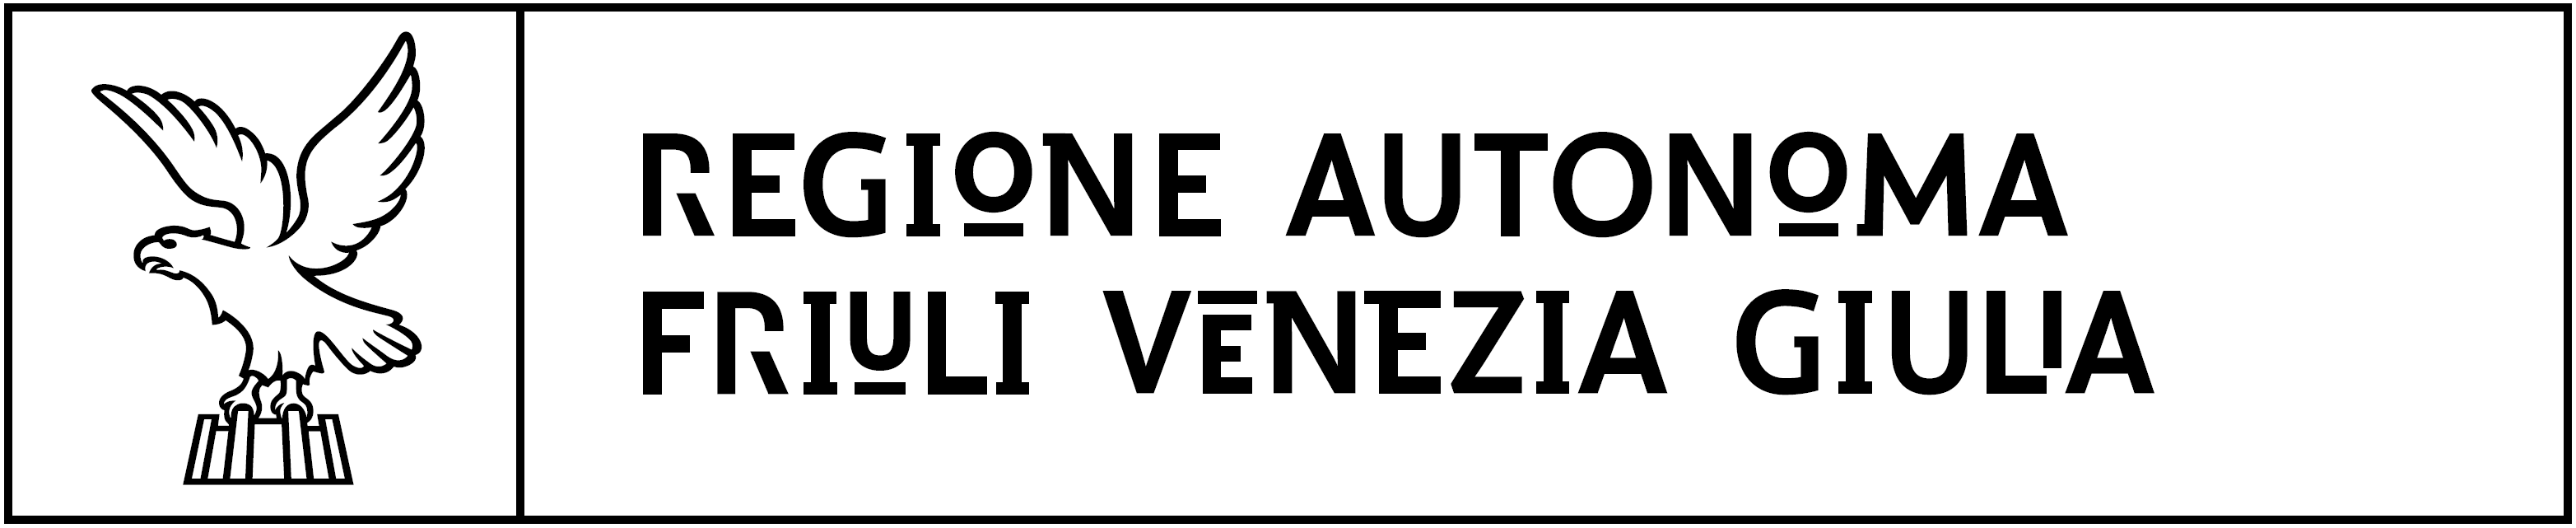 regione friuli venezia giulia logo